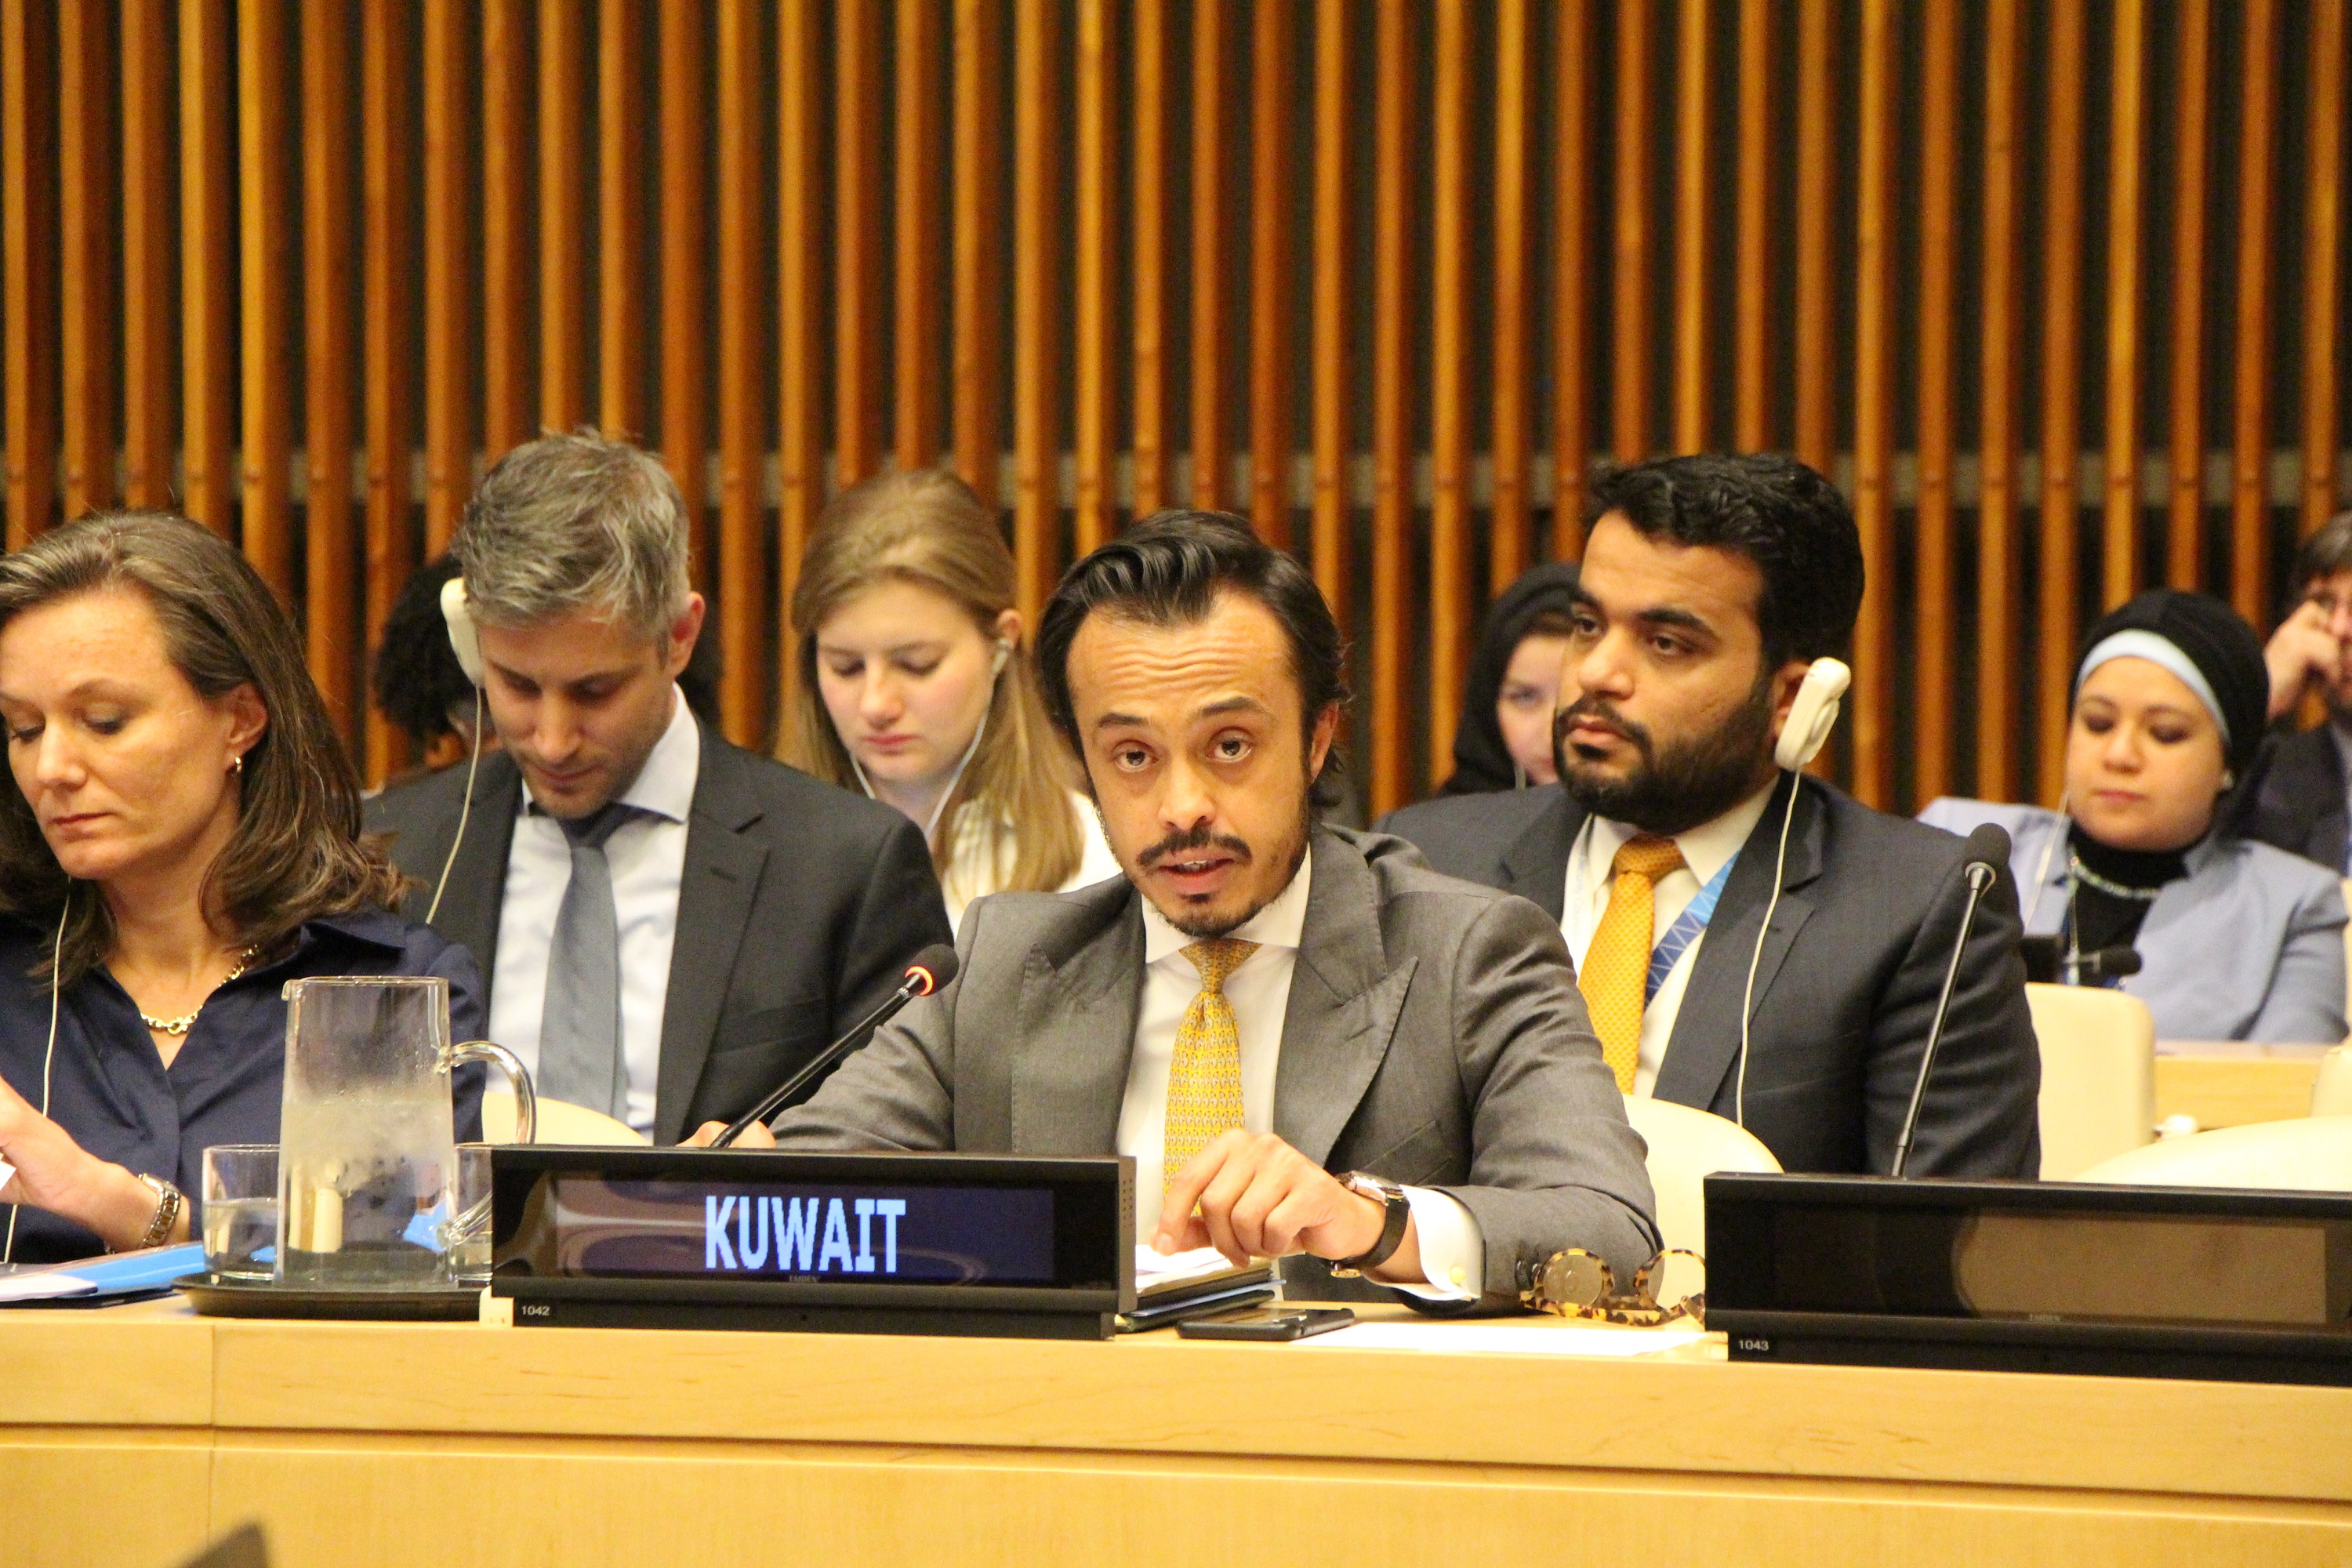 Le membre de la délégation permanente du Koweït aux Nations Unies, le conseiller Nawaf Al-Ahmad, lors de la réunion du Conseil de Sécurité de l’ONU sur le rôle des leaders religieux pour un monde sûr